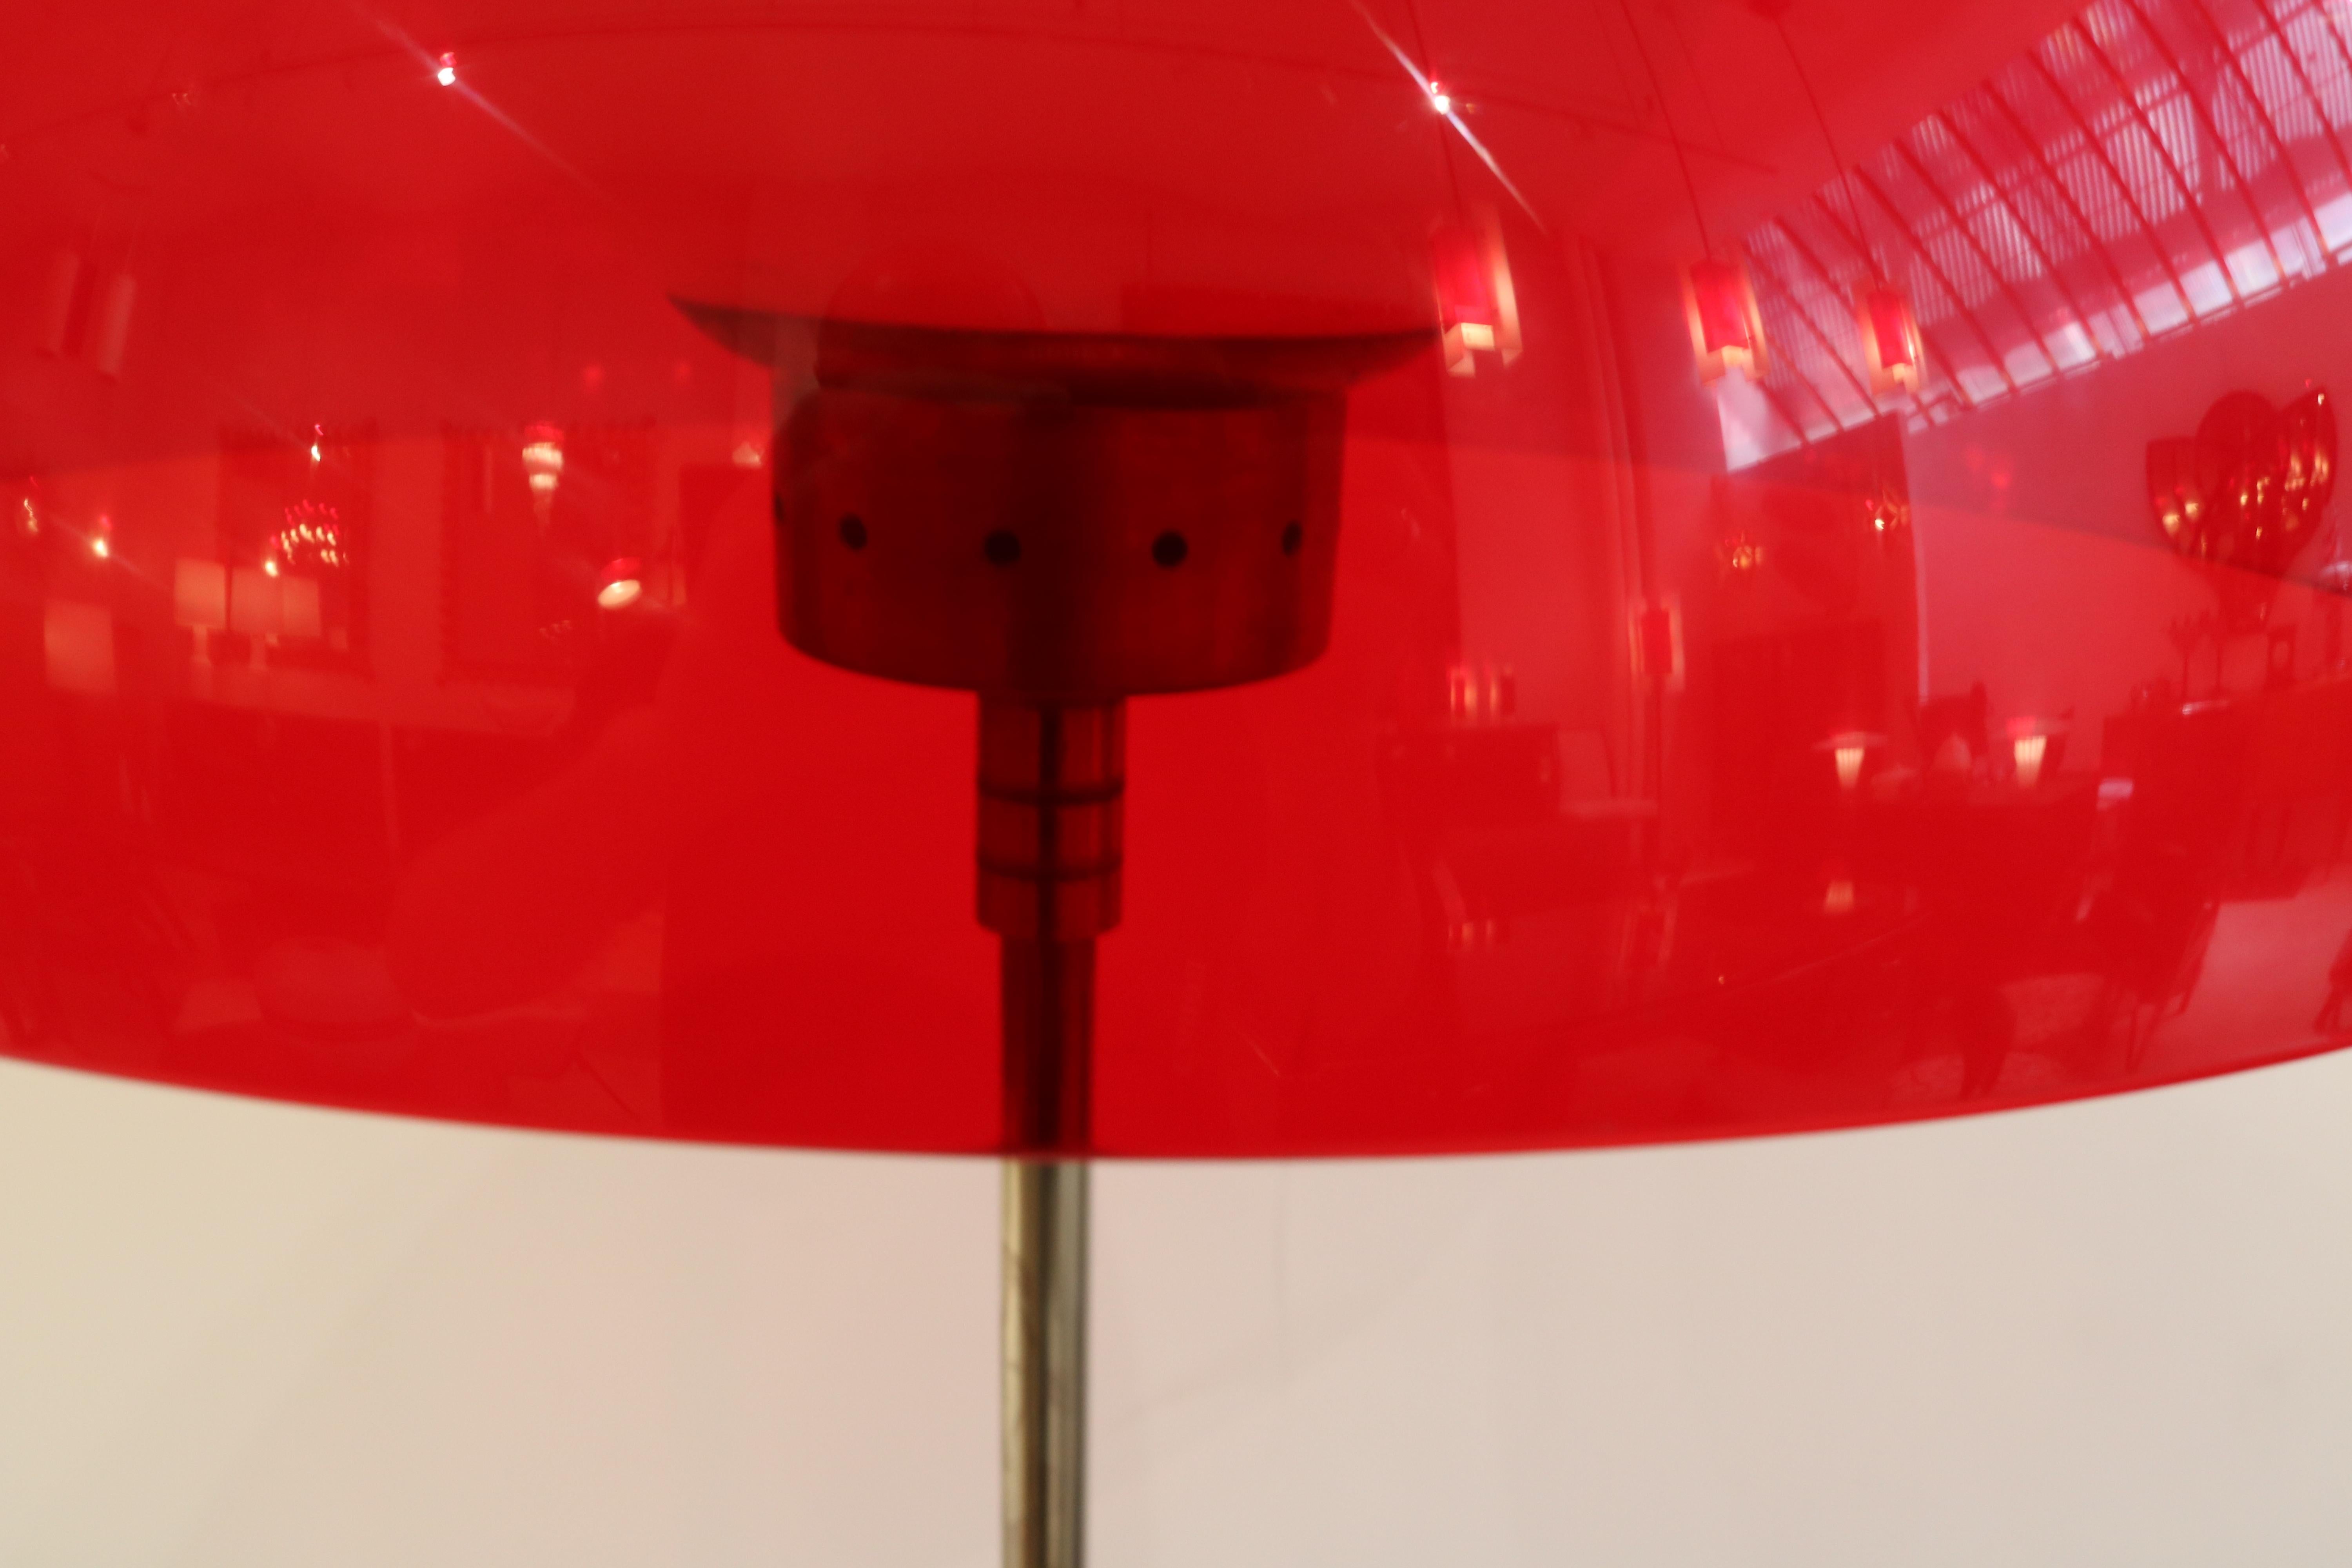 Lampadaire moderniste italien.
Abat-jour en plastique rouge fusionné avec des éléments décoratifs en métal et un globe intérieur en verre dépoli.
Soutenu par une tige en métal patiné reposant sur une base en marbre.